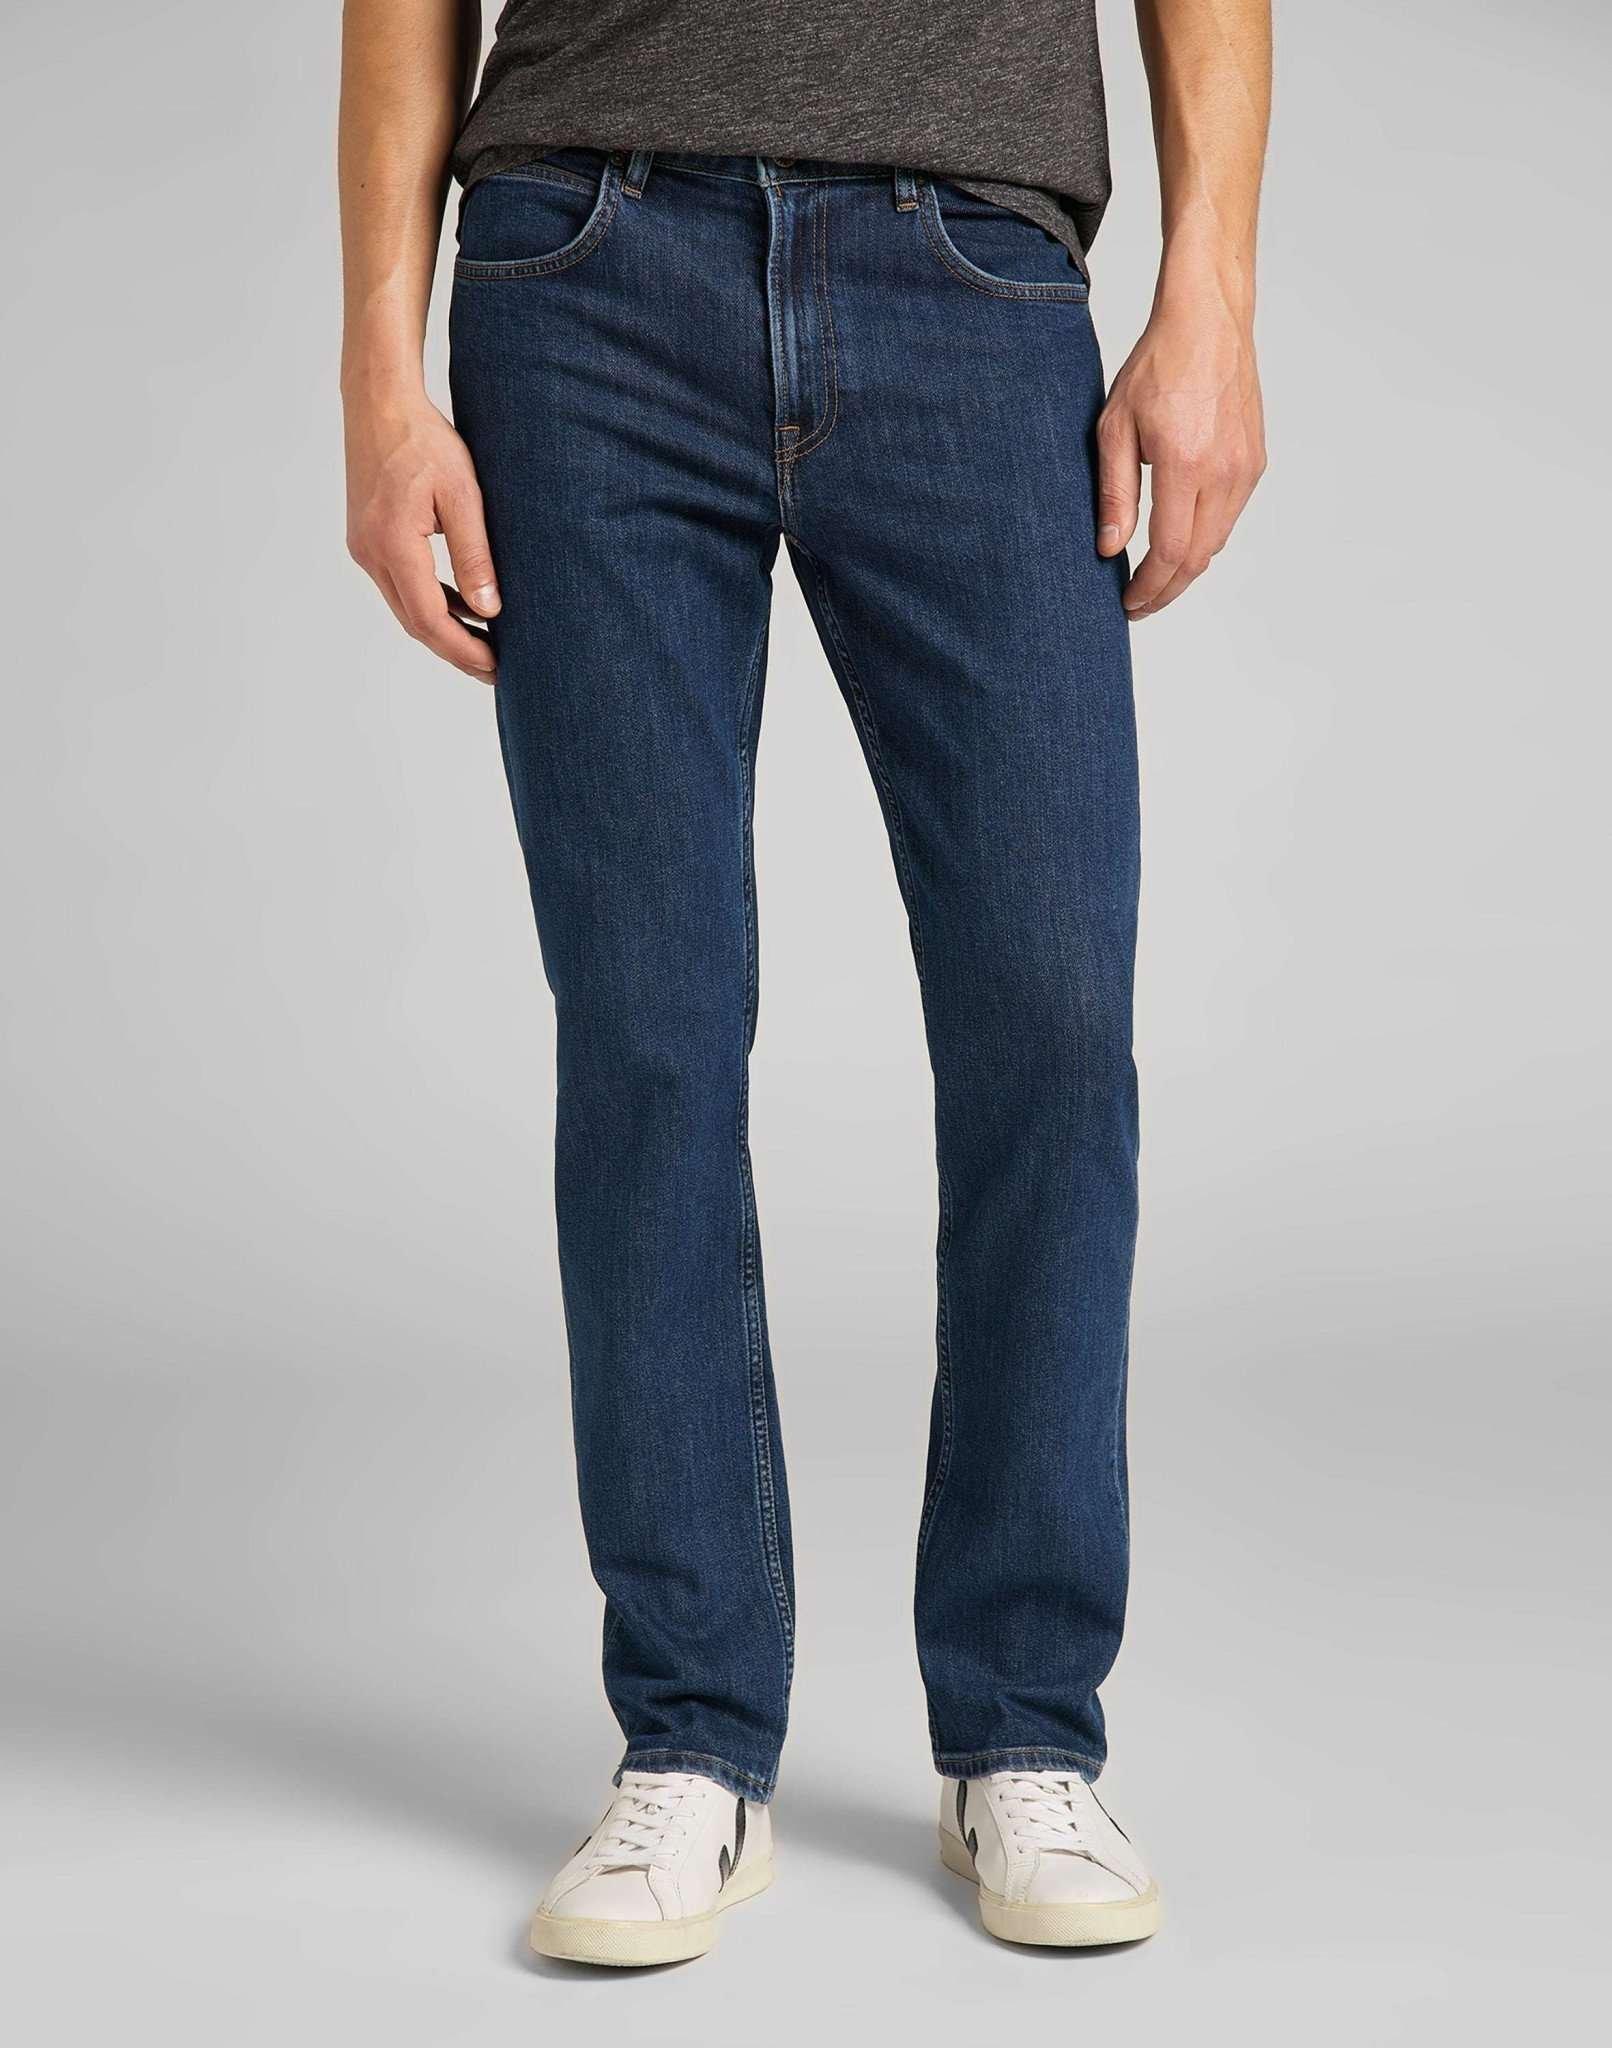 Jeans Straight Leg Brooklyn Herren Blau Denim L34/W30 von Lee